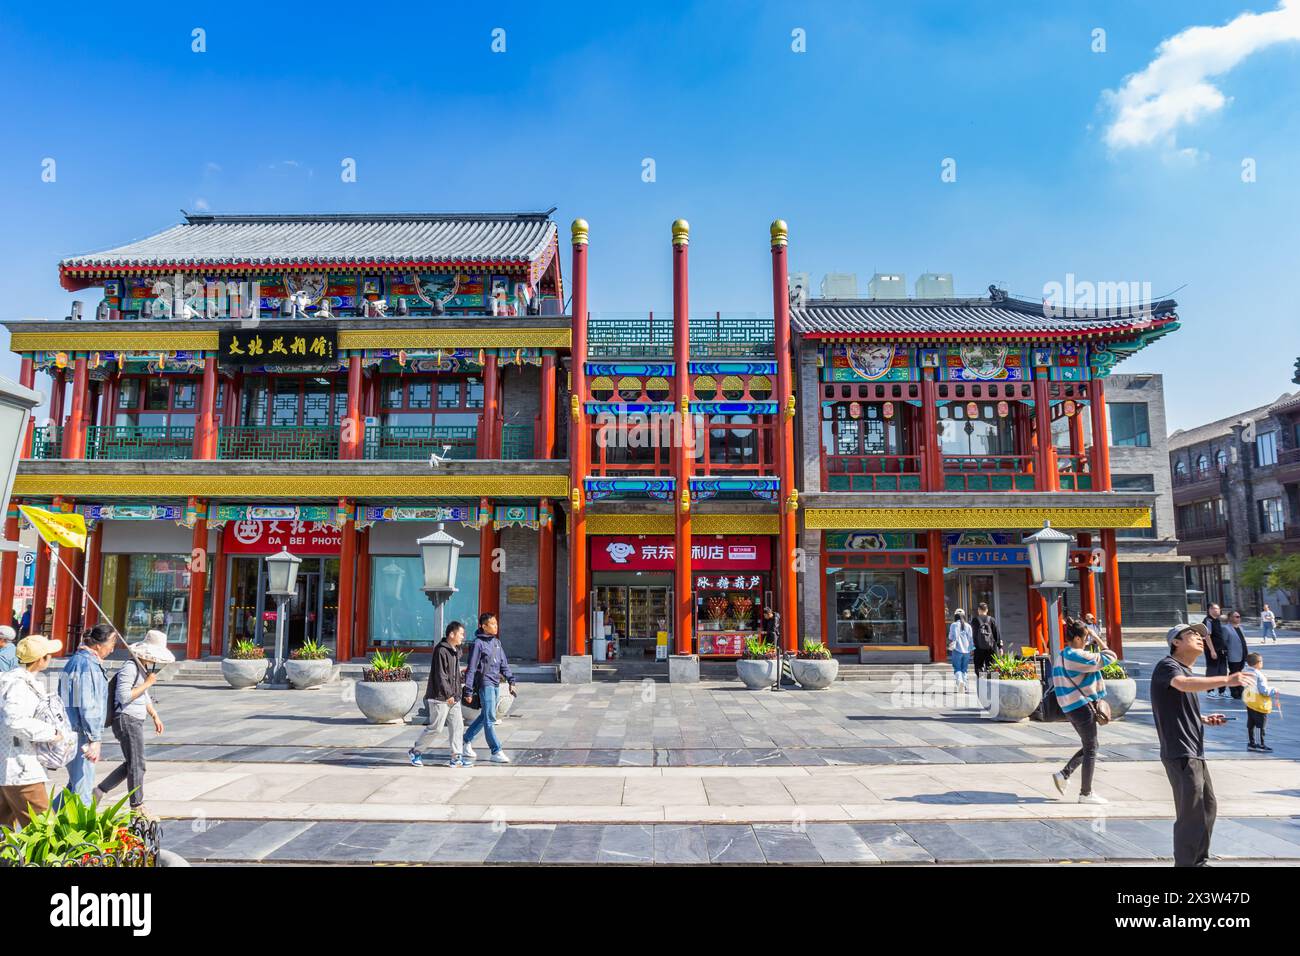 Farbenfrohe Geschäfte in der touristischen Qianmen-Straße in Peking, China Stockfoto